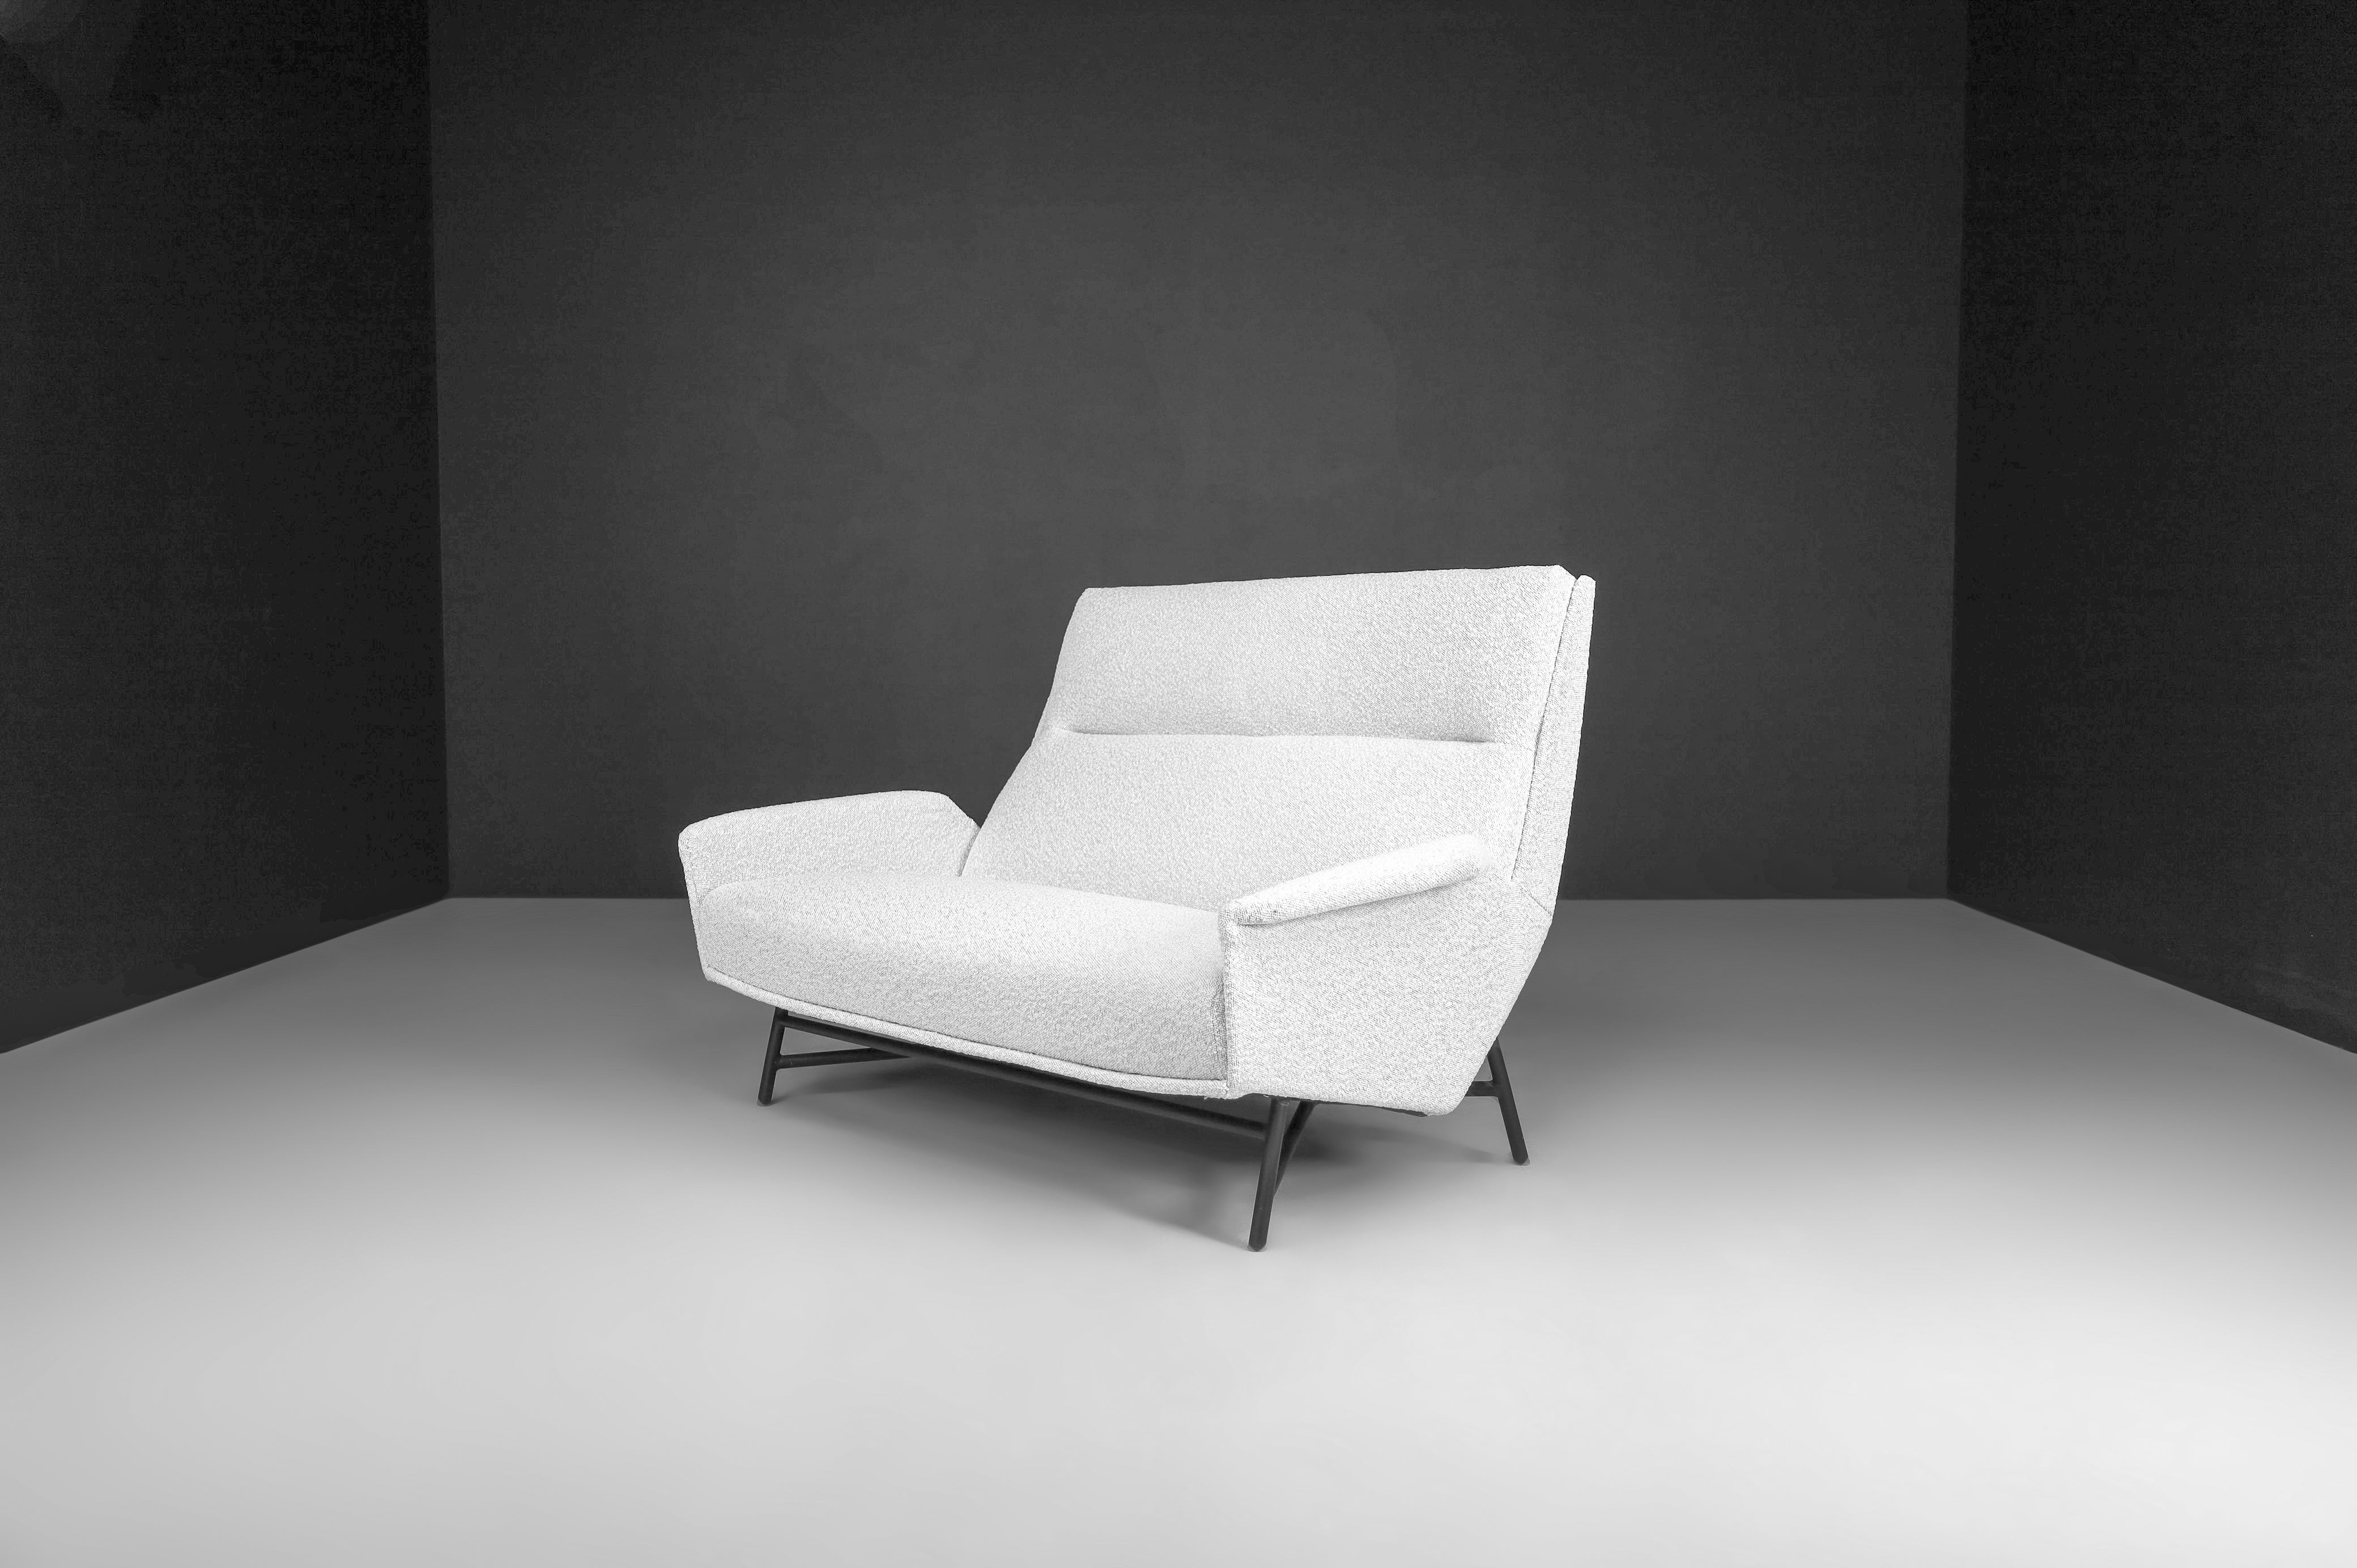 Modernes Lounge-Sofa aus Bouclé, neu gepolstert von Guy Besnard, Frankreich 1959

Modernes Loungesofa aus der Jahrhundertmitte, entworfen und bearbeitet von Guy Besnard, mit neu gepolstertem Bouclé-Stoff, Frankreich, 1959. Dieses Sofa ist ein